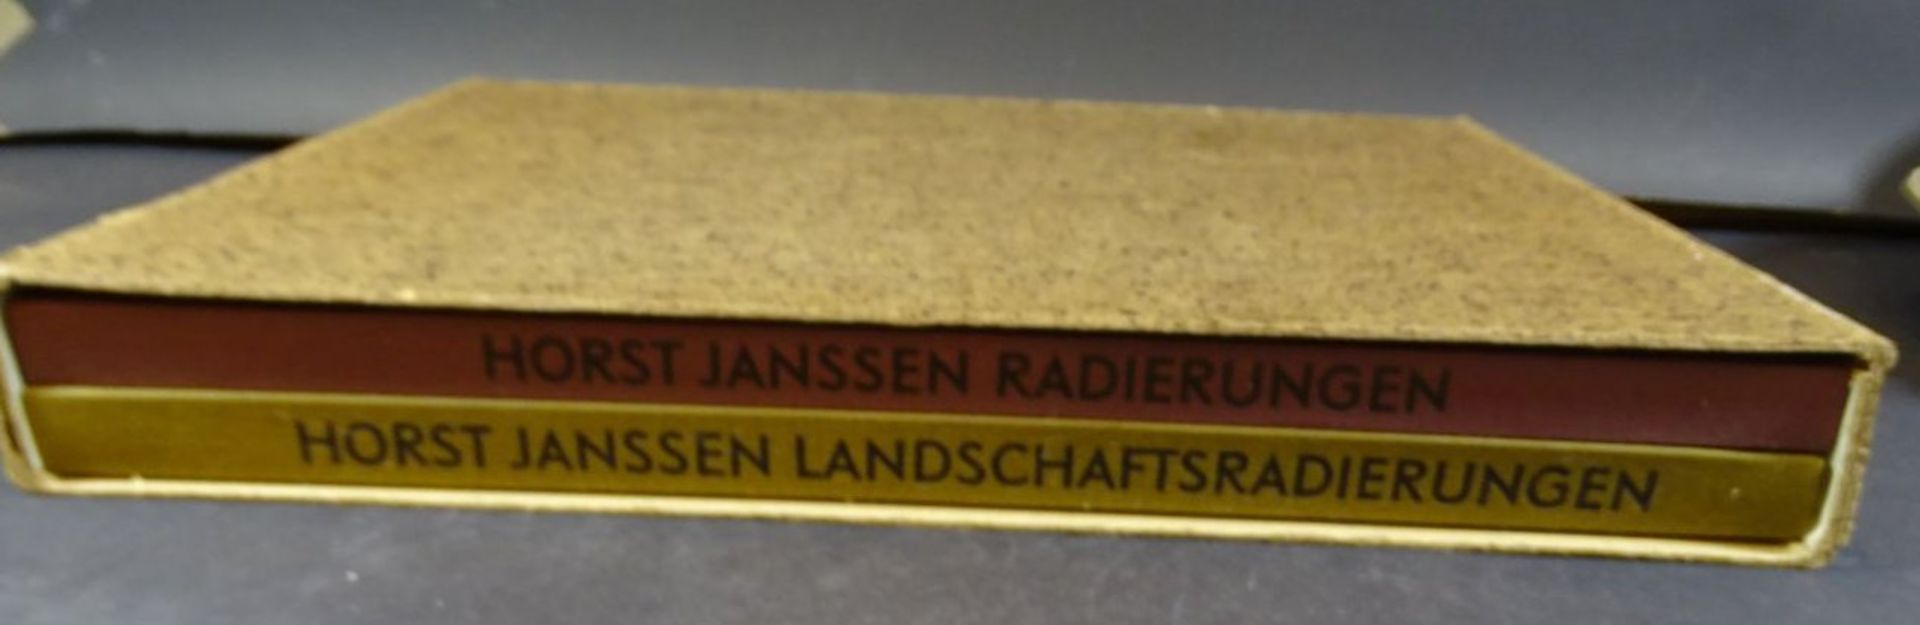 Horst Janssen "Radierungen" 2 Folio Bände in Schuber, neuwertig, 1971 - Image 2 of 9